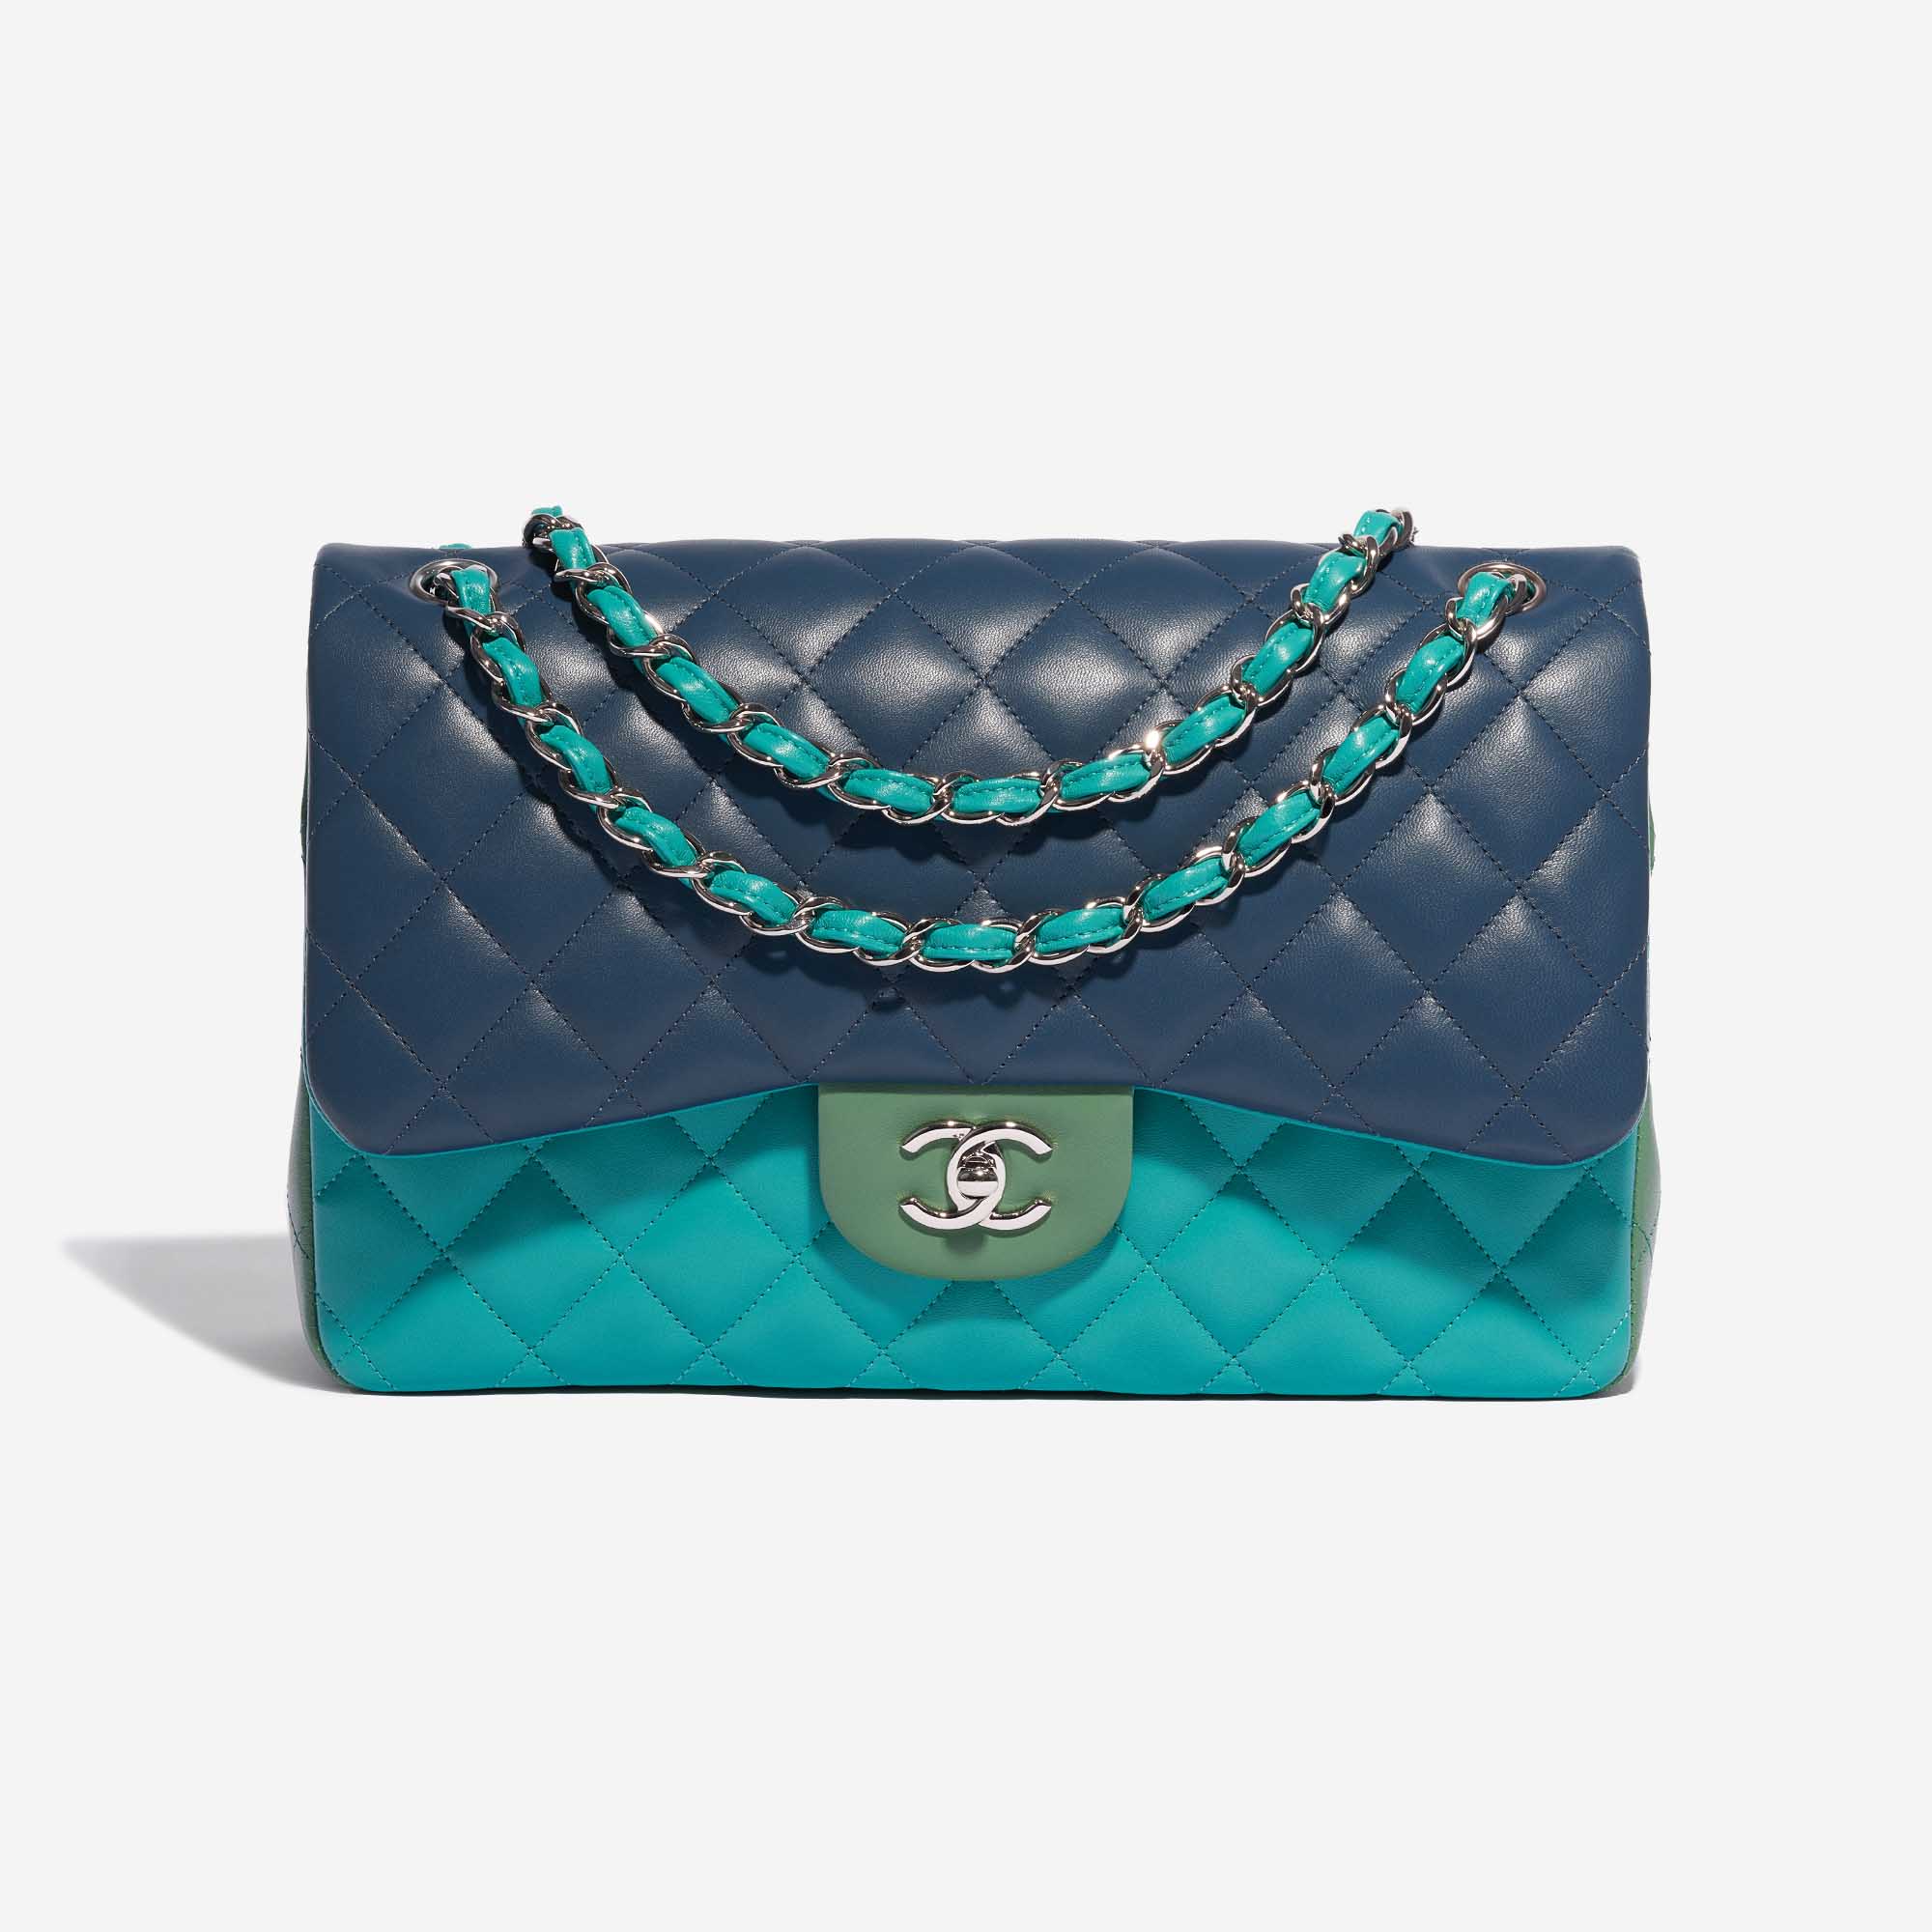 Sac Chanel d'occasion Timeless Jumbo Lamb Green / Turquoise / Blue Blue, Multicolor Front | Vendez votre sac de créateur sur Saclab.com